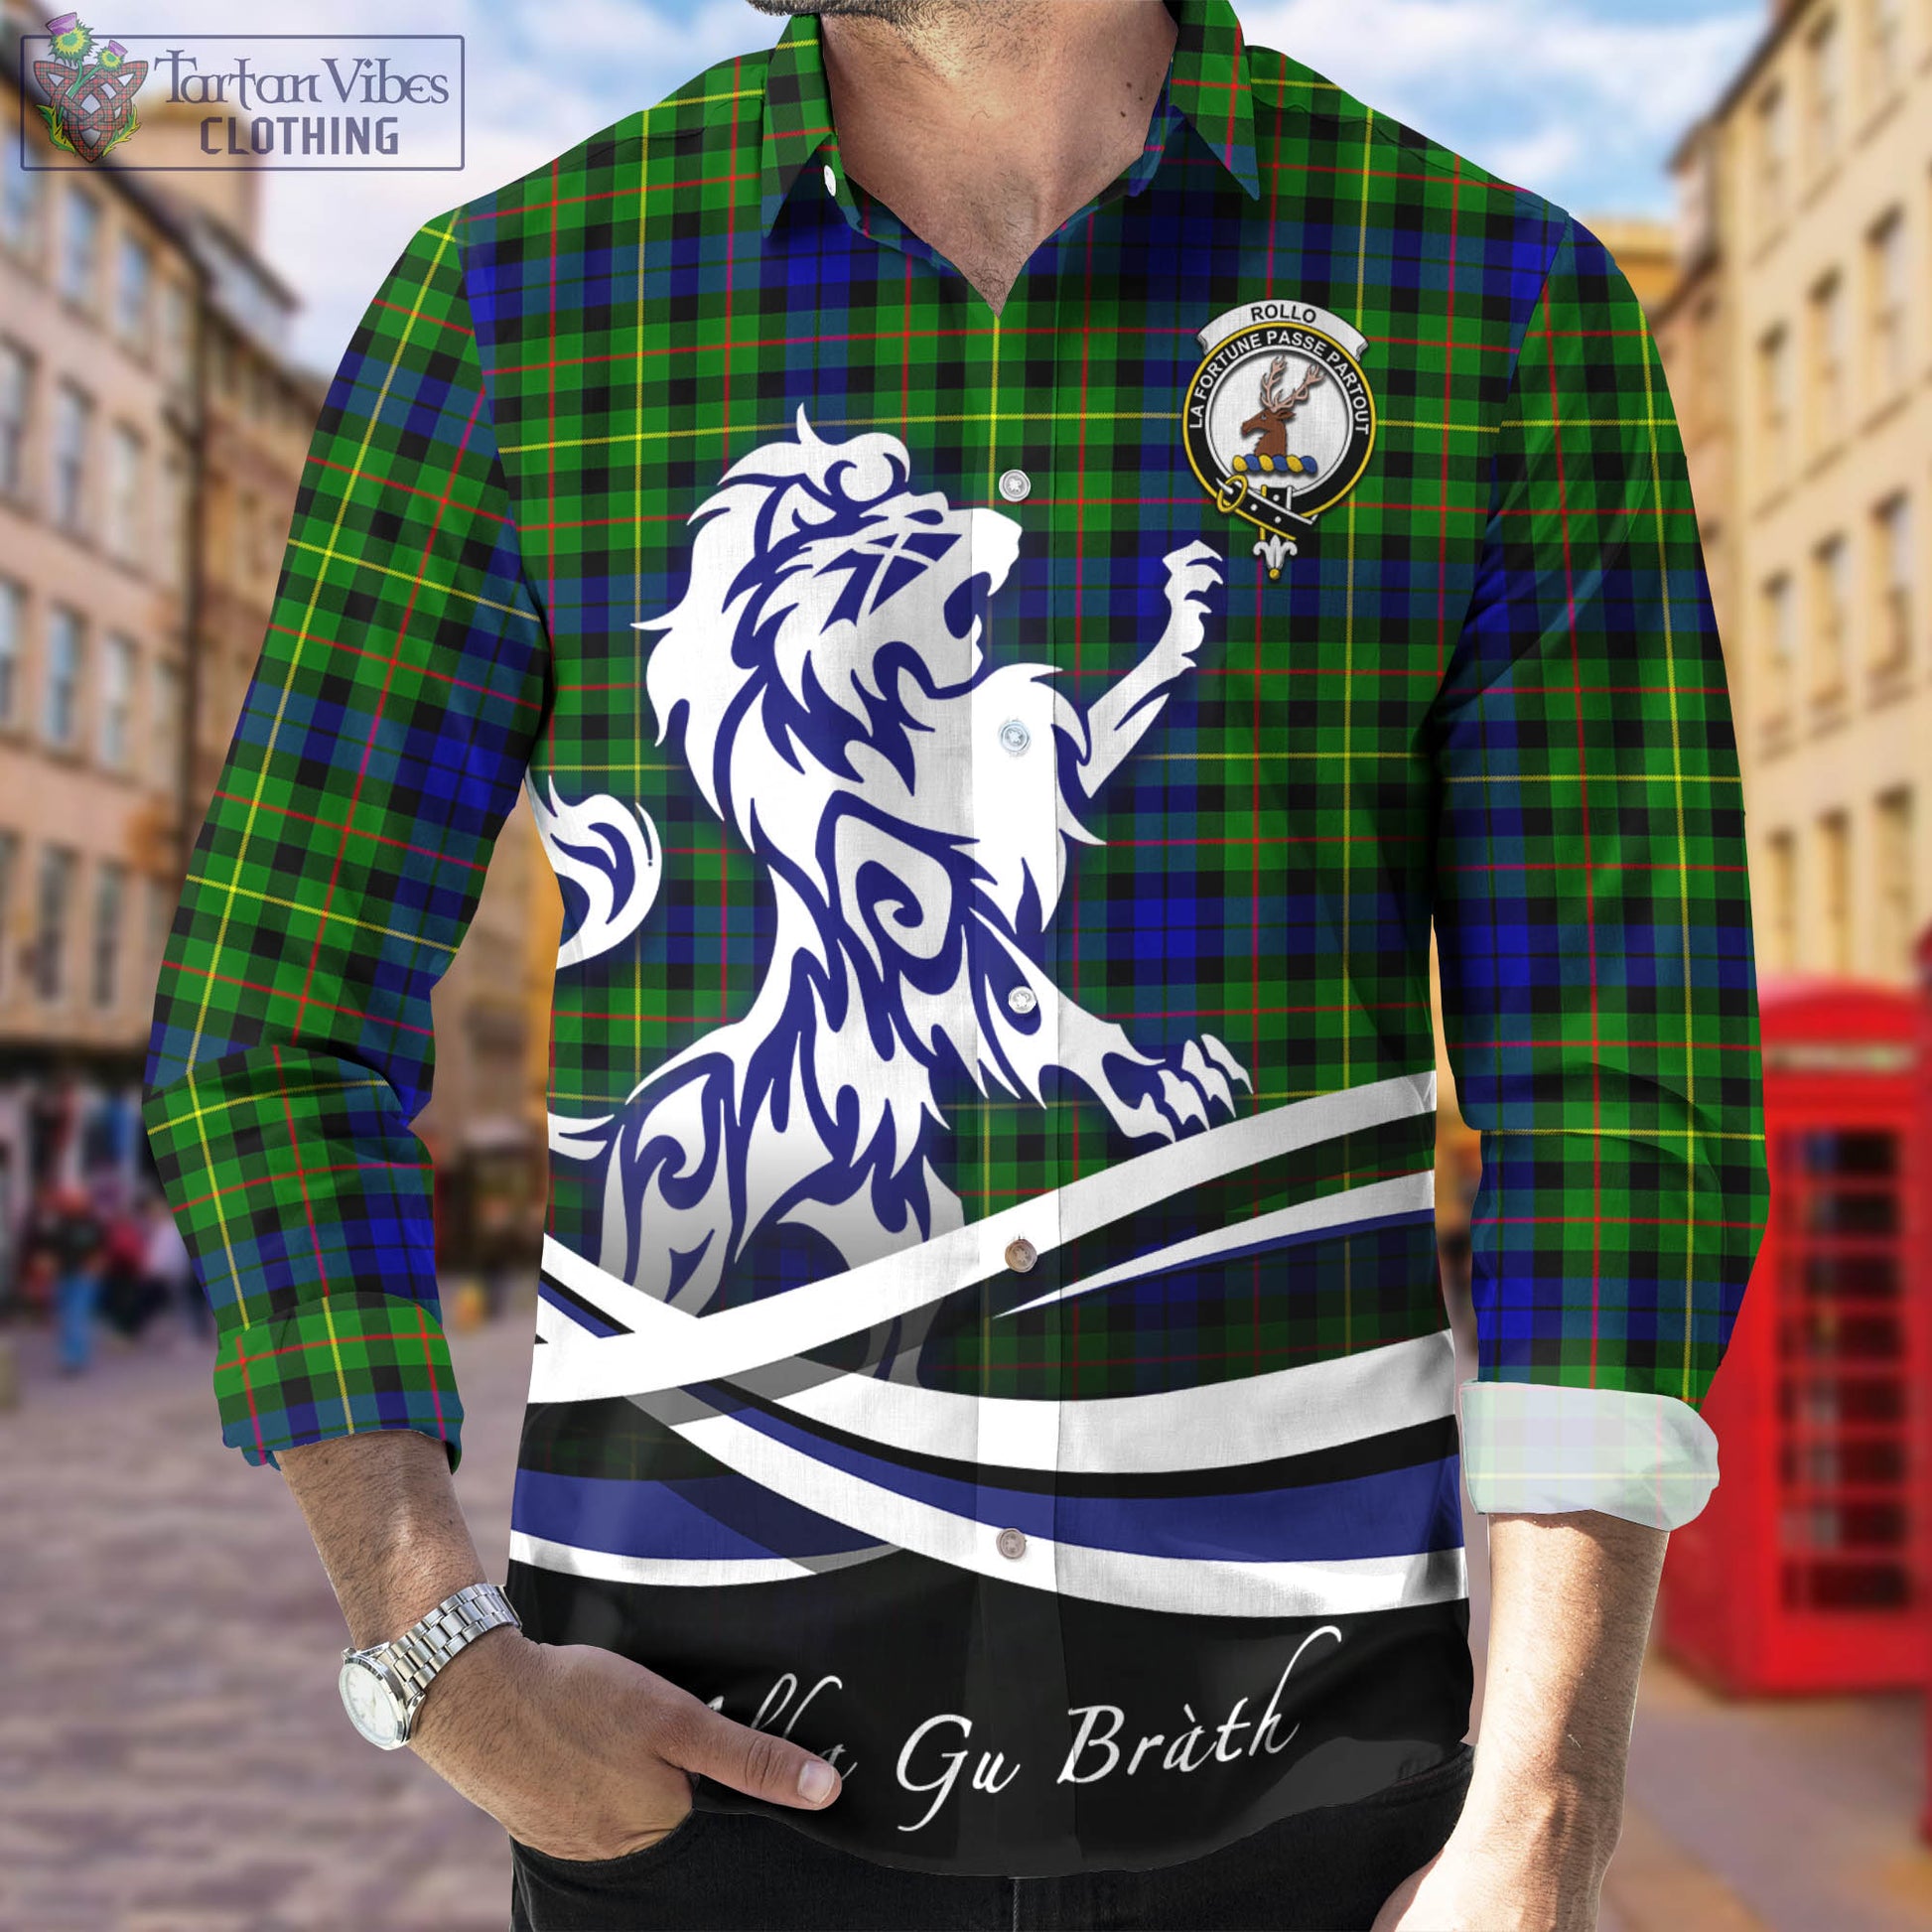 rollo-modern-tartan-long-sleeve-button-up-shirt-with-alba-gu-brath-regal-lion-emblem